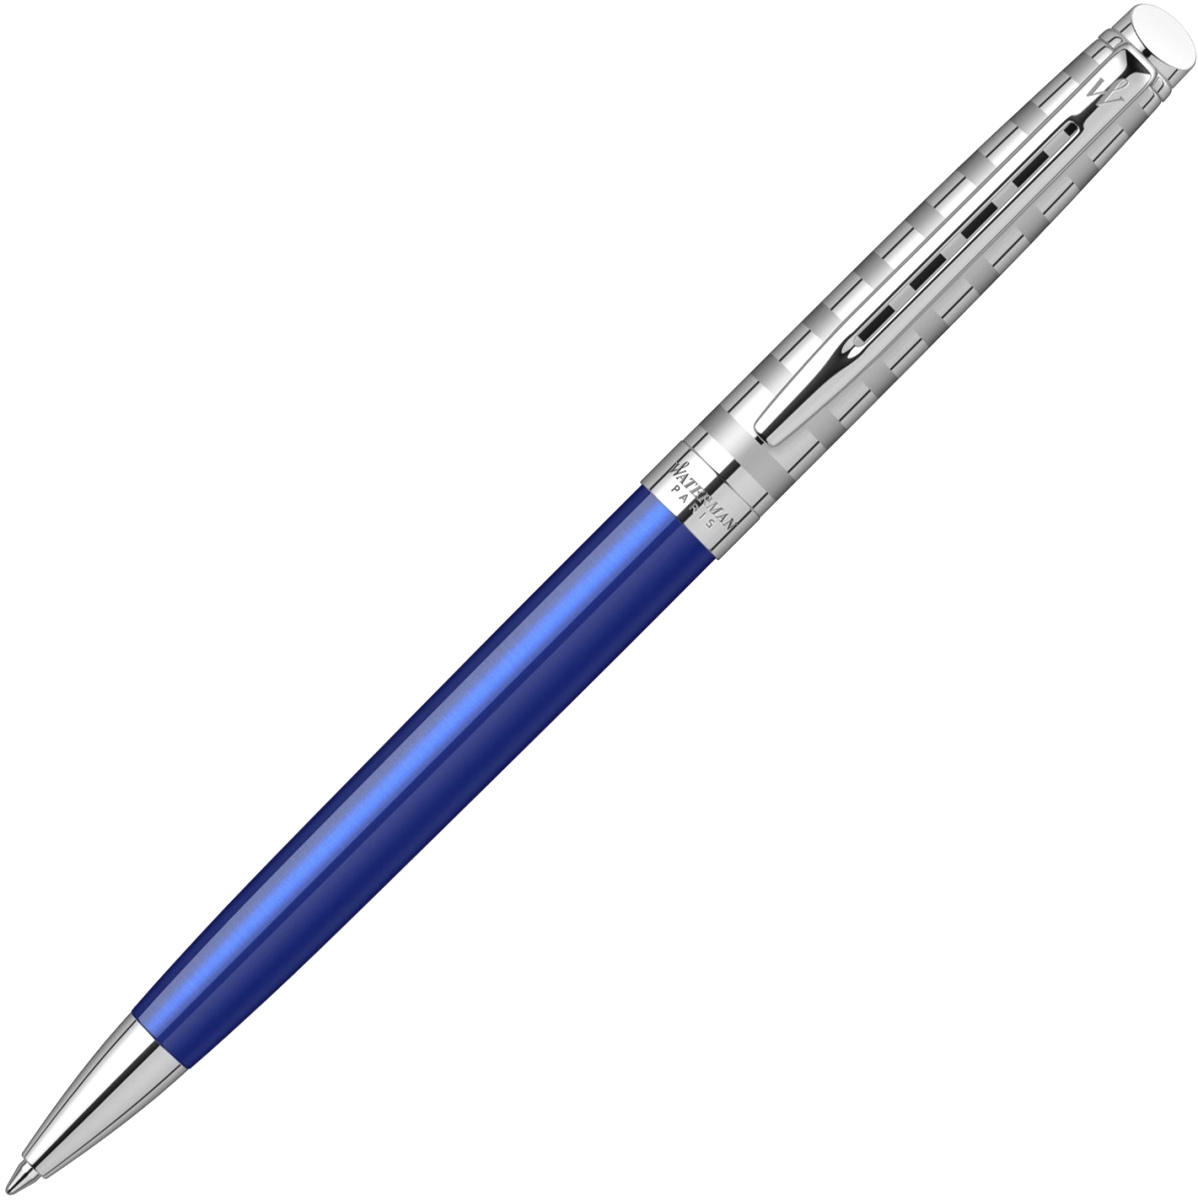  Шариковая ручка Waterman Hemisphere Deluxe 2020, Marine Blue CT